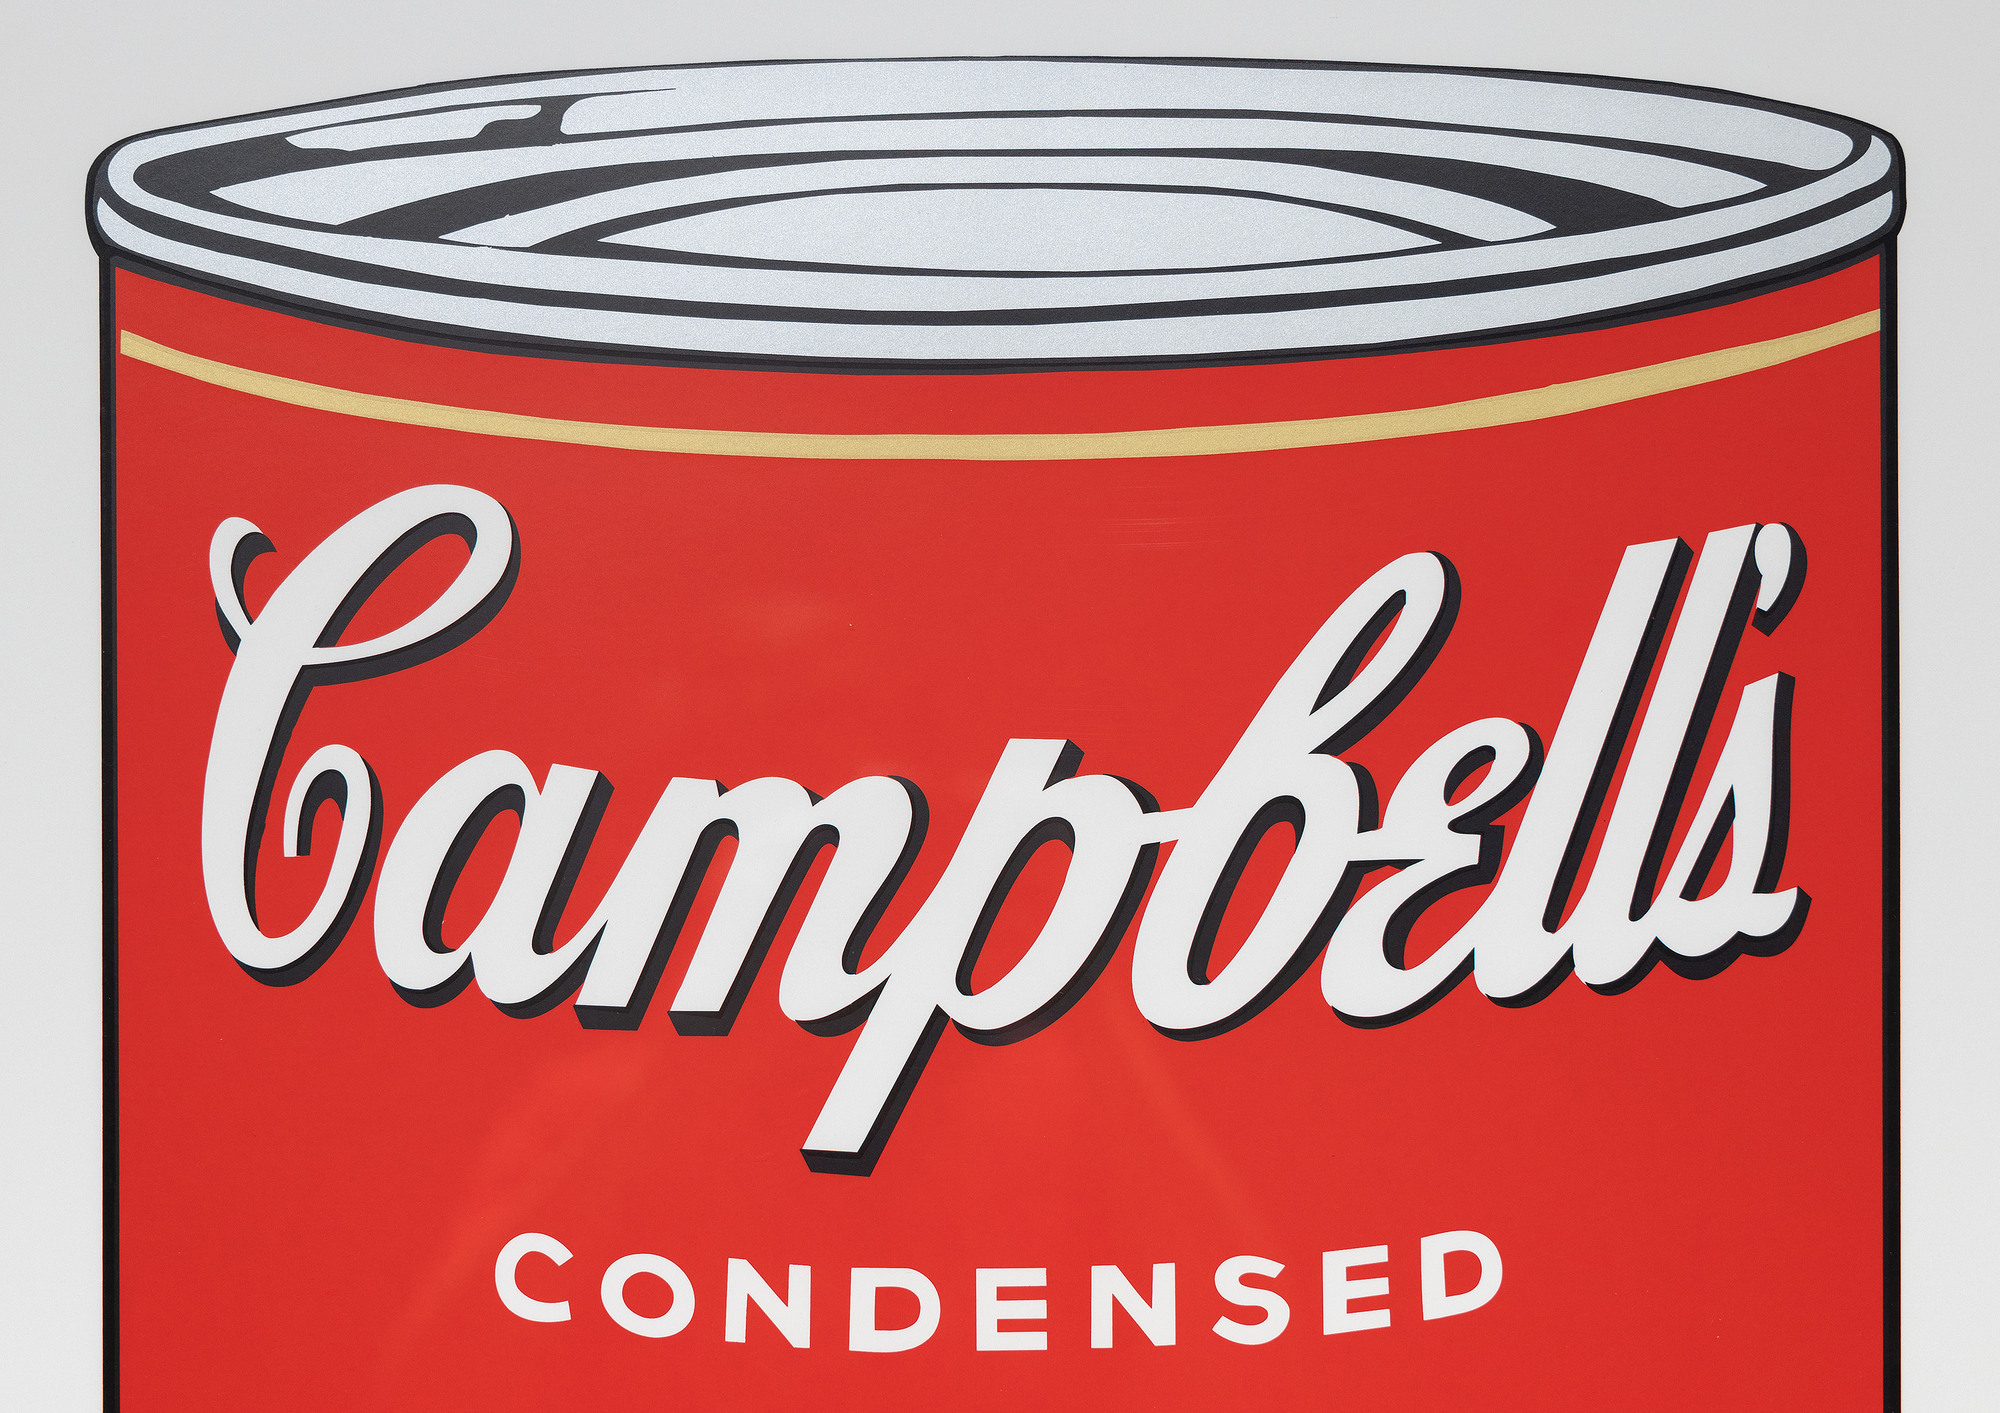 アンディ・ウォーホルのキャンベル・スープ缶シリーズは、彼のキャリアとポップ・アート・ムーブメントにおける極めて重要な瞬間である。それぞれ異なる味を描いた32枚のキャンバスからなるこのシリーズは、ありふれた日常的な消費財をハイアートの地位へと昇華させ、アートの世界に革命をもたらした。1968年に発表されたスクリーンプリントの「ペッパー・ポット」は、大量生産と消費文化の特徴である、鮮やかで平坦な色彩と繰り返されるイメージという彼の特徴的なスタイルを採用している。商業的技法であるスクリーン・プリントは、ハイ・アートと商業アートの境界線を曖昧にし、芸術的価値観や認識に挑戦するウォーホルの関心と一致している。